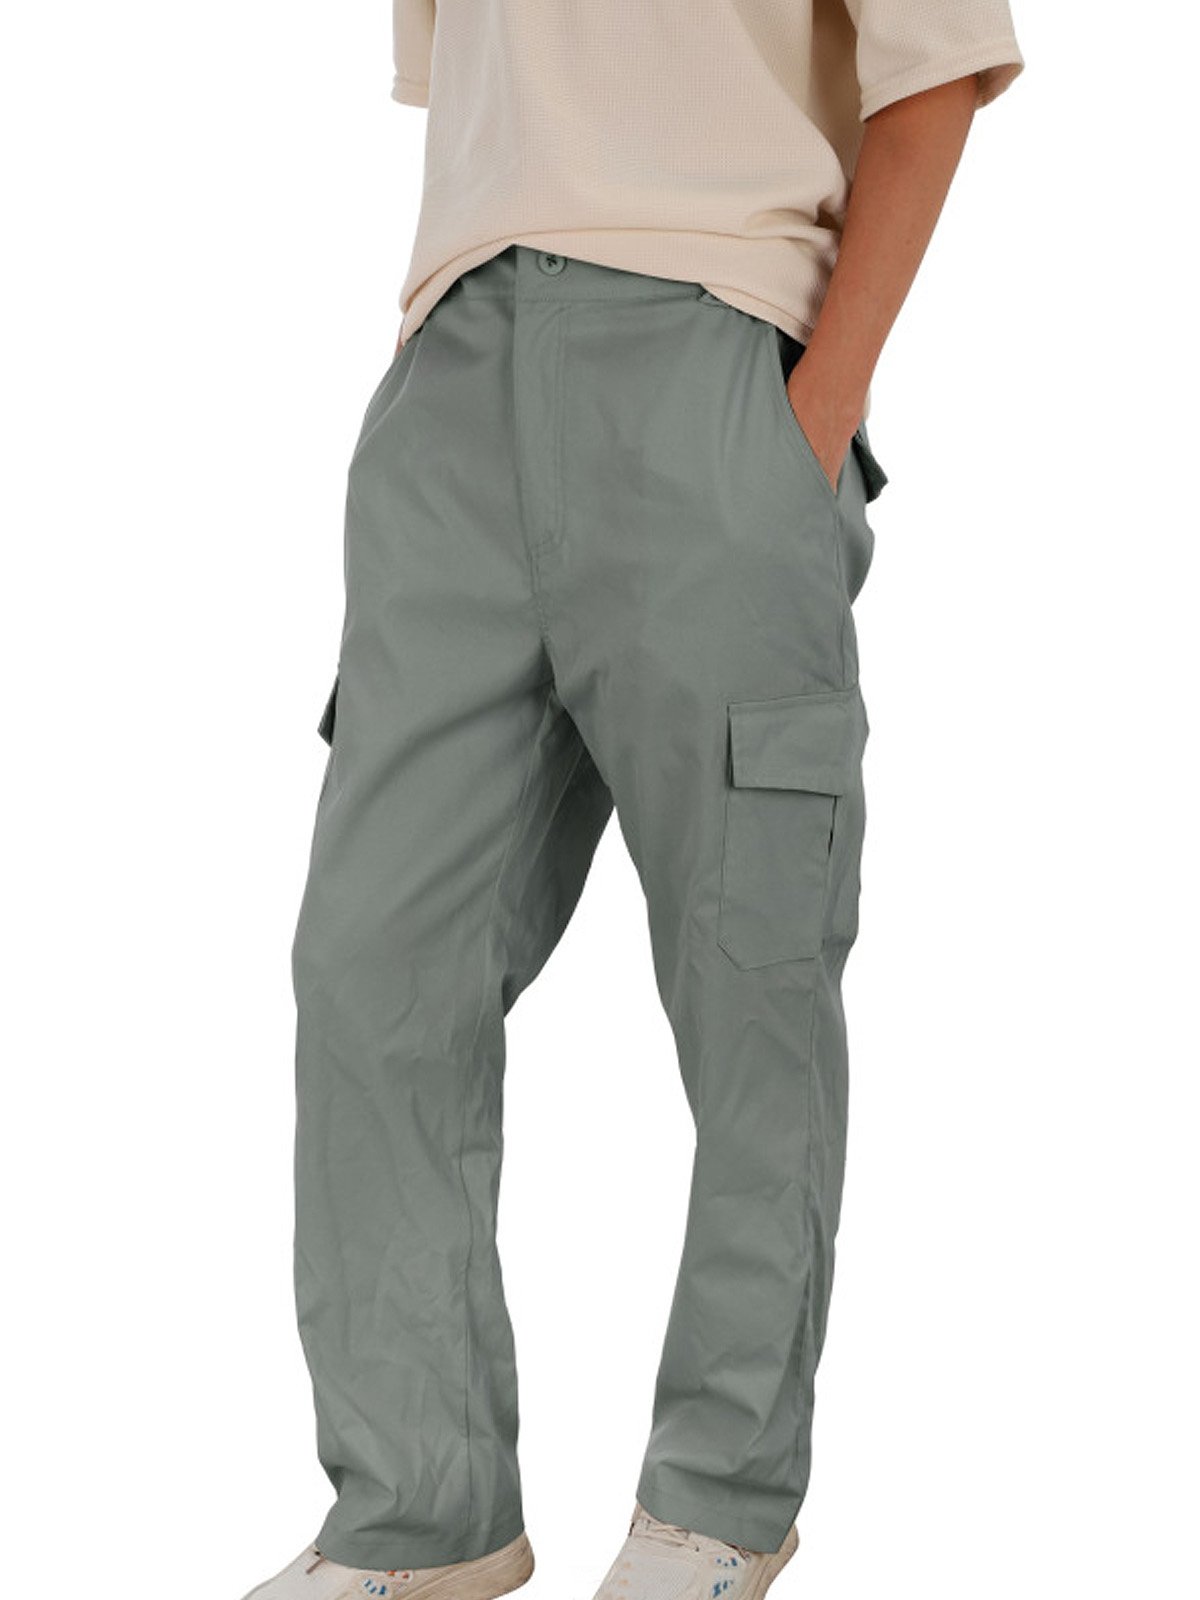 JoyMitty Basic Cargo Pants Men's Pocket Pants